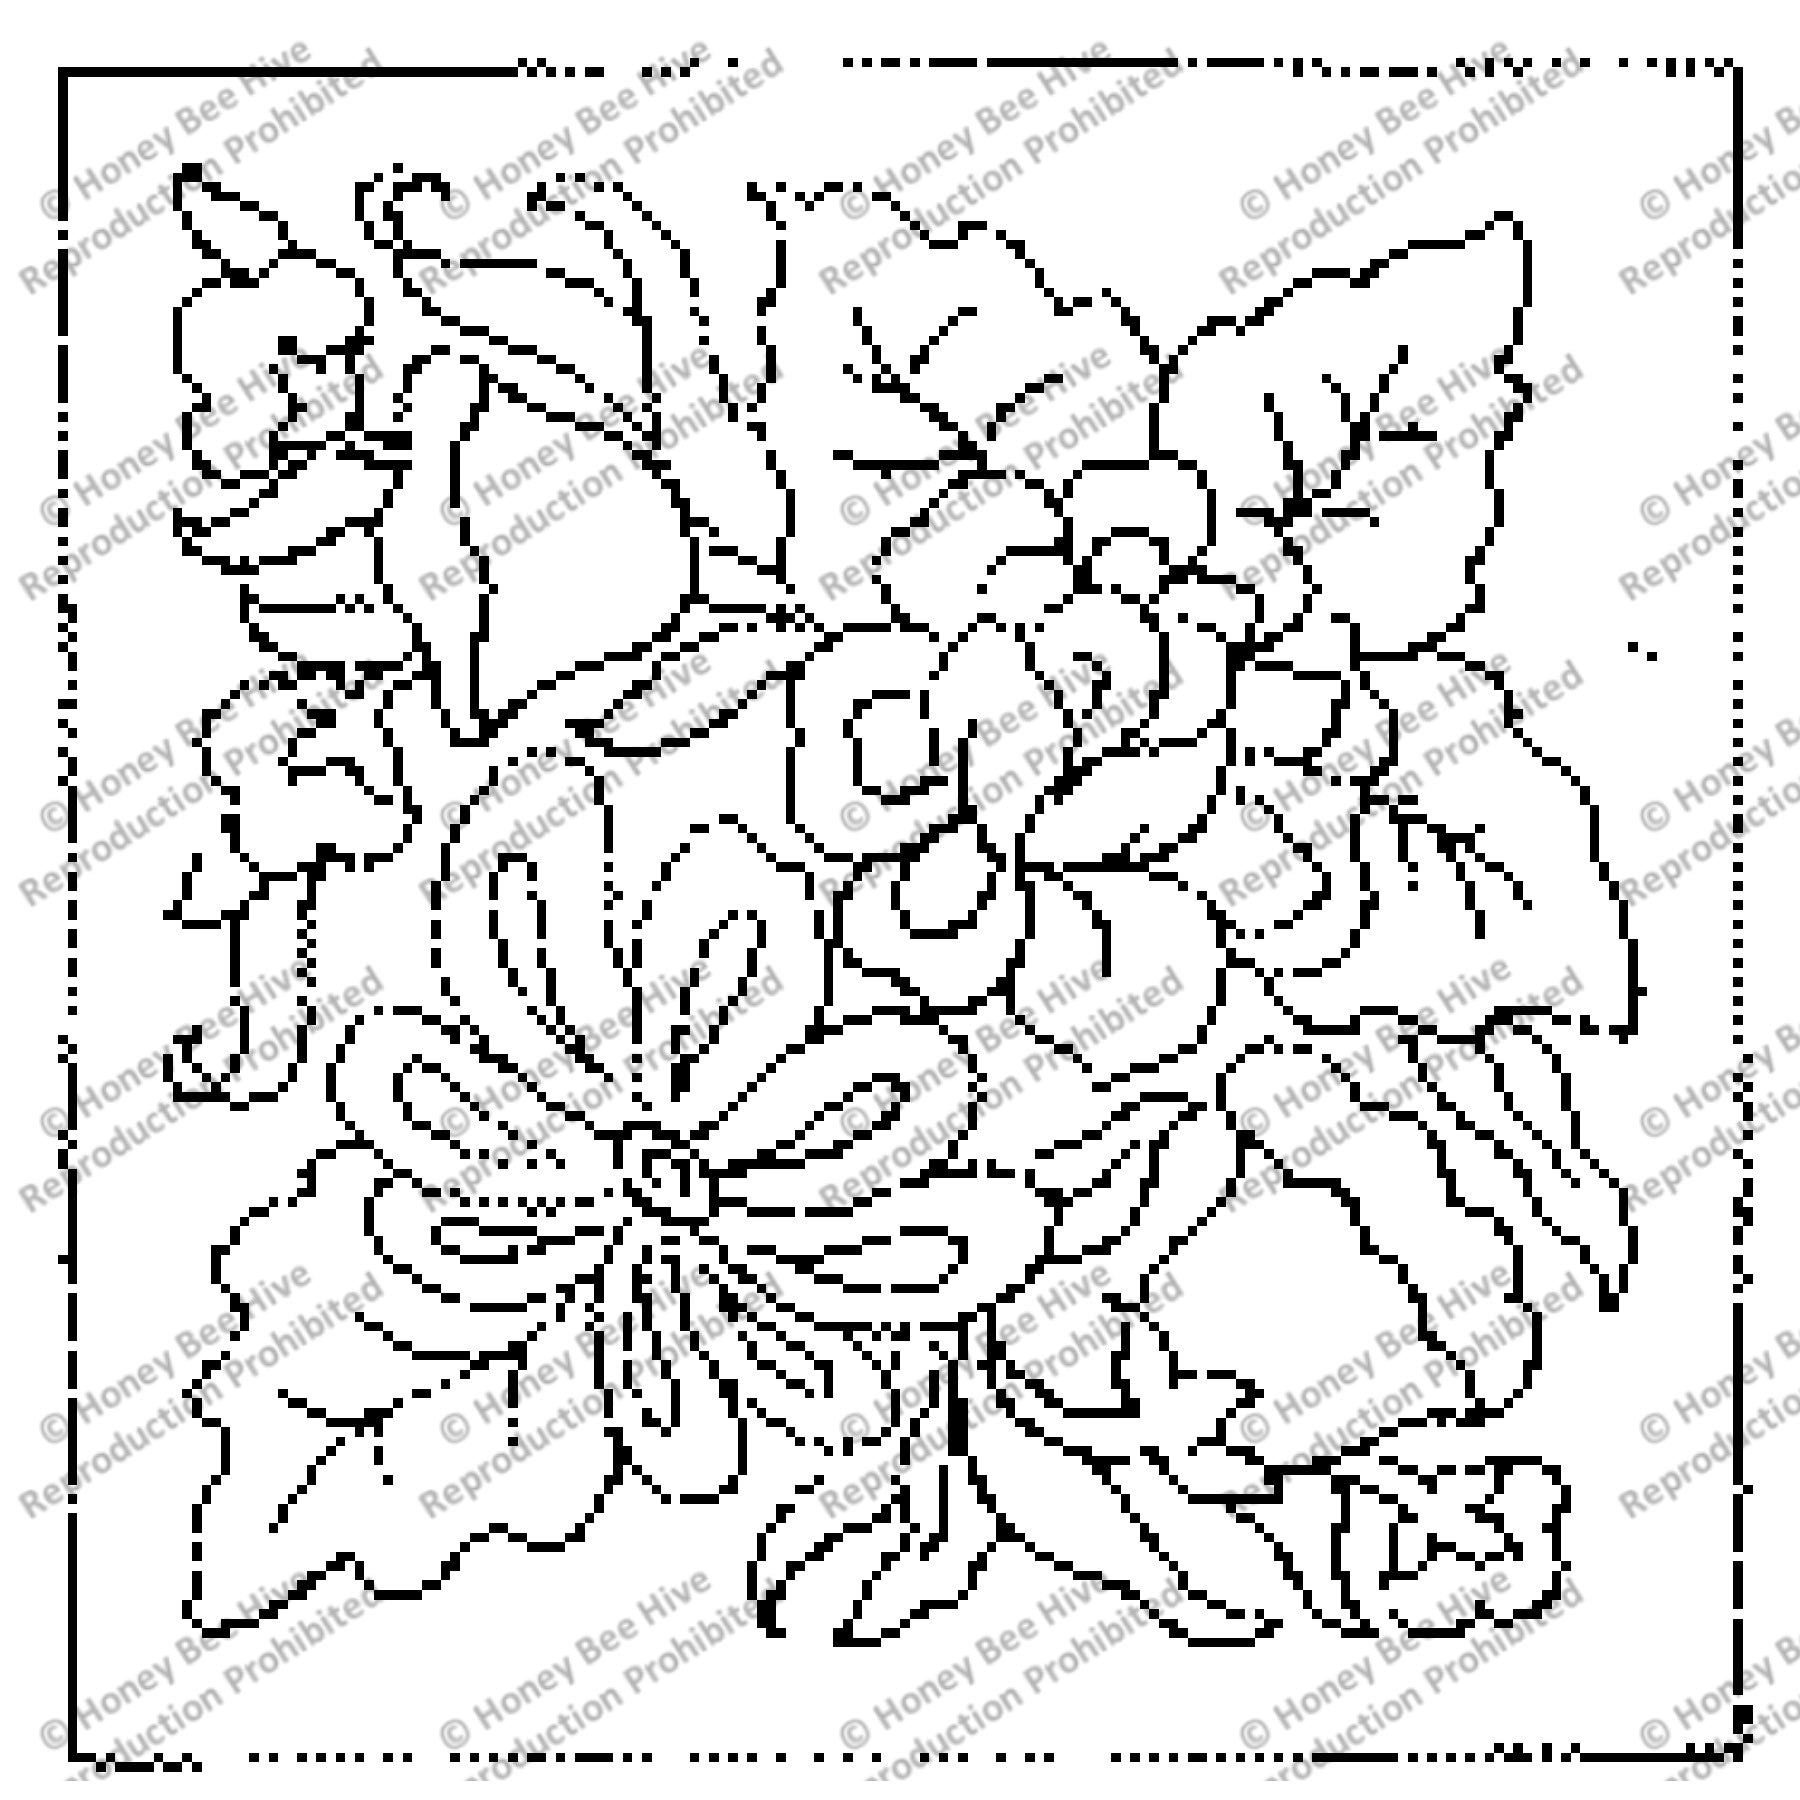 Burnham Flowers, rug hooking pattern